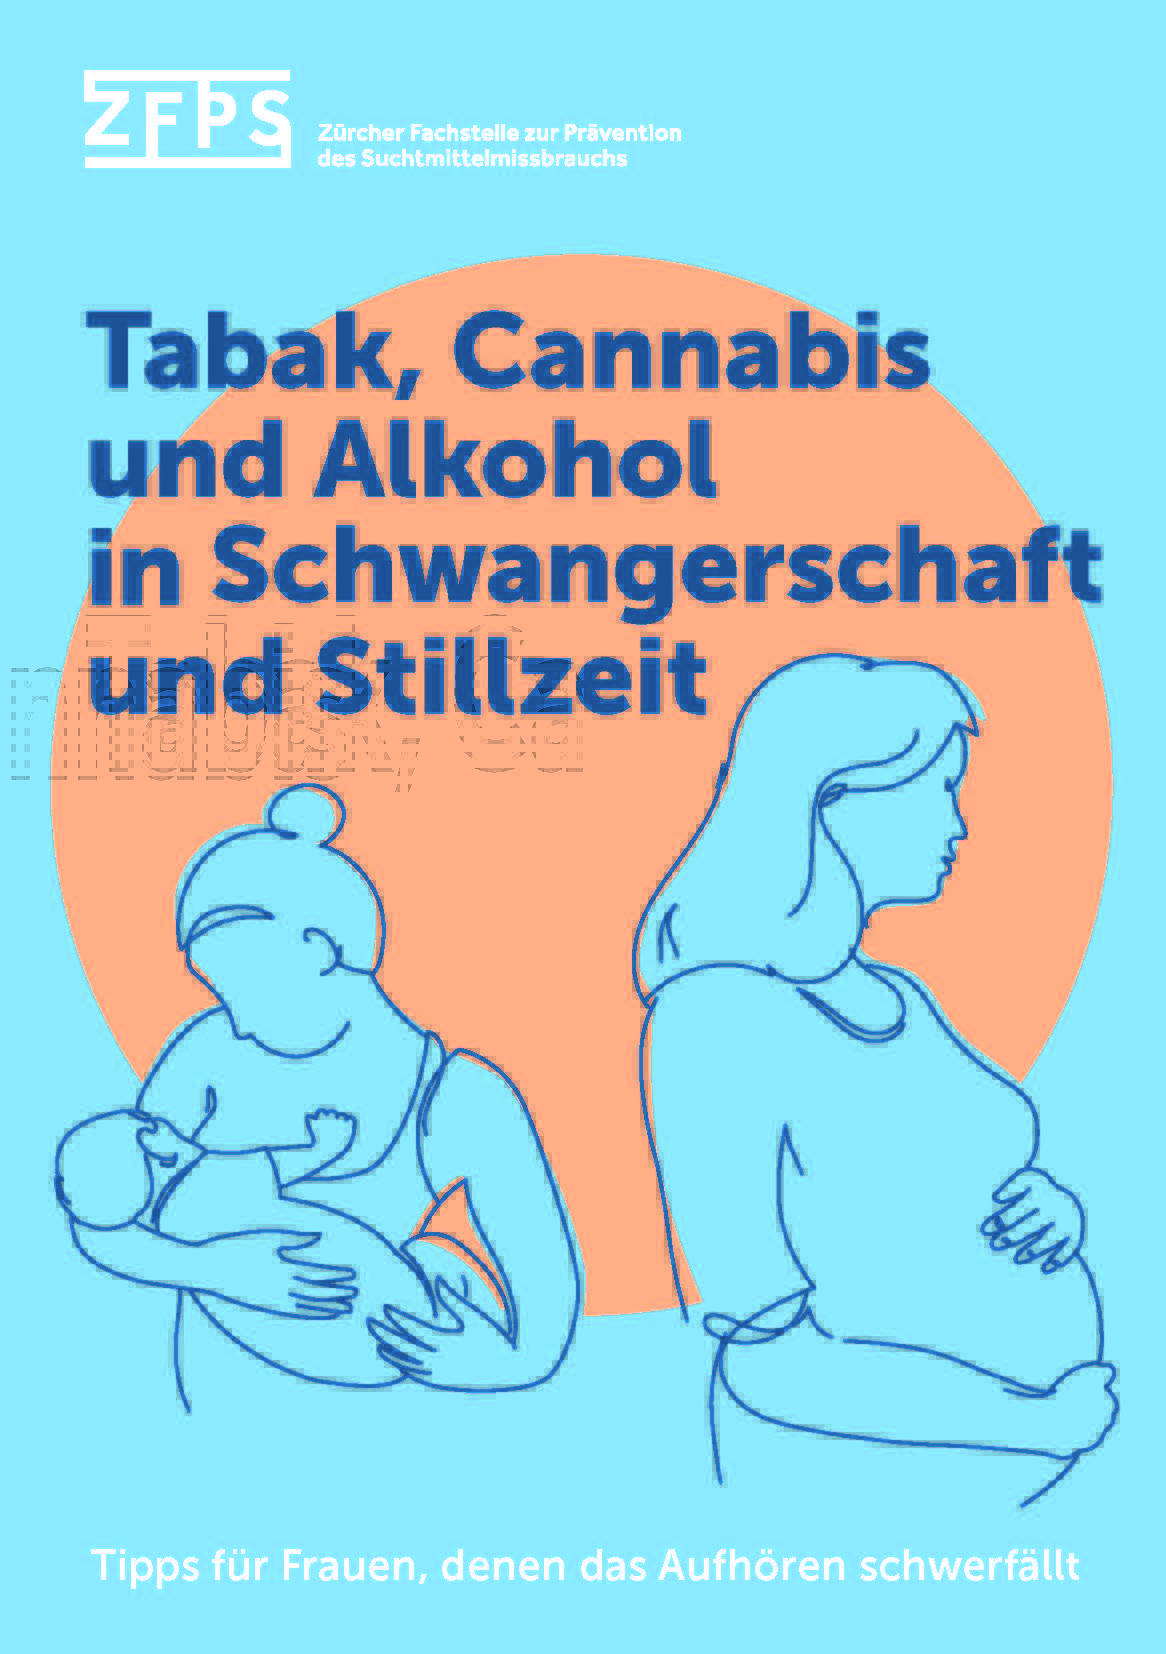 Titelbild-Flyer Alkohol Tabak und Cannabis in Schwangerschaft und Stllzeit